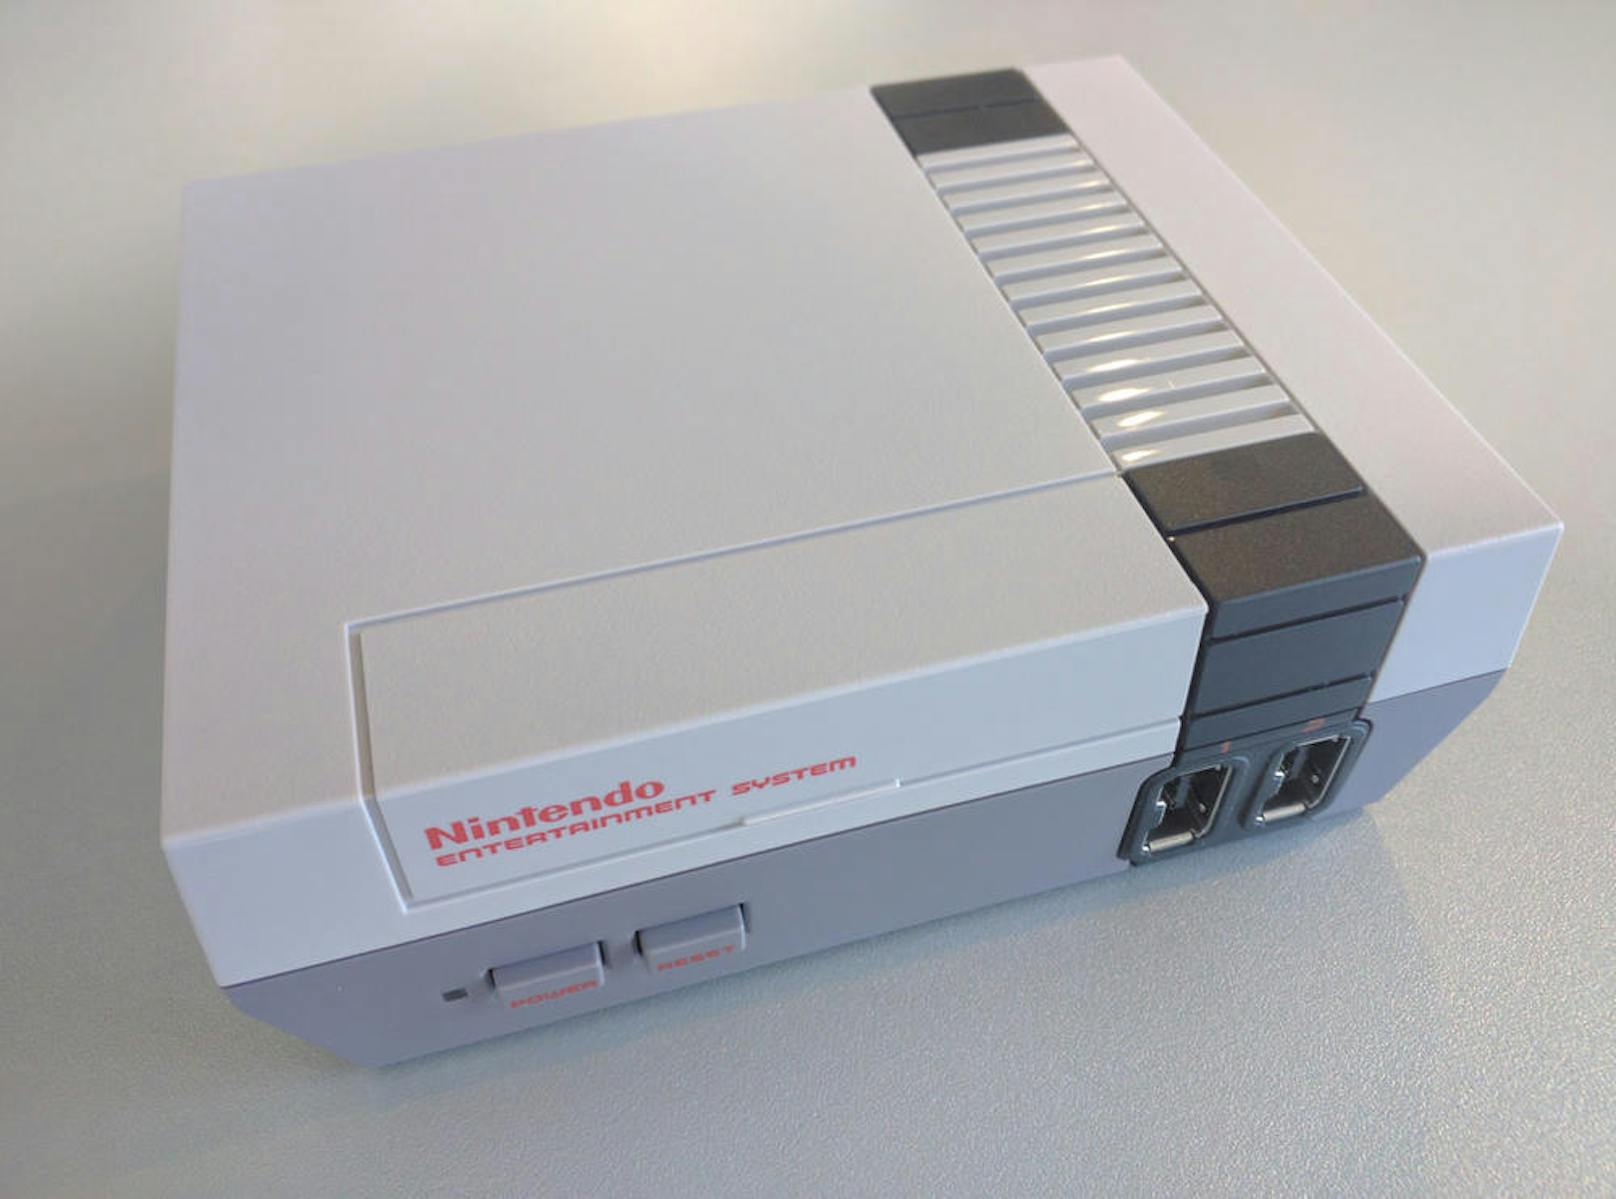 In der Fassung für das Nintendo Classic Mini verfügt jedes Spiel über vier Speicherpunkte. Sie erlauben es, das Spiel jederzeit wieder dort aufzunehmen, wo man es spontan unterbrochen hat - sei es mitten im Level oder vor dem Kampf mit einem trickreichen Endgegner.